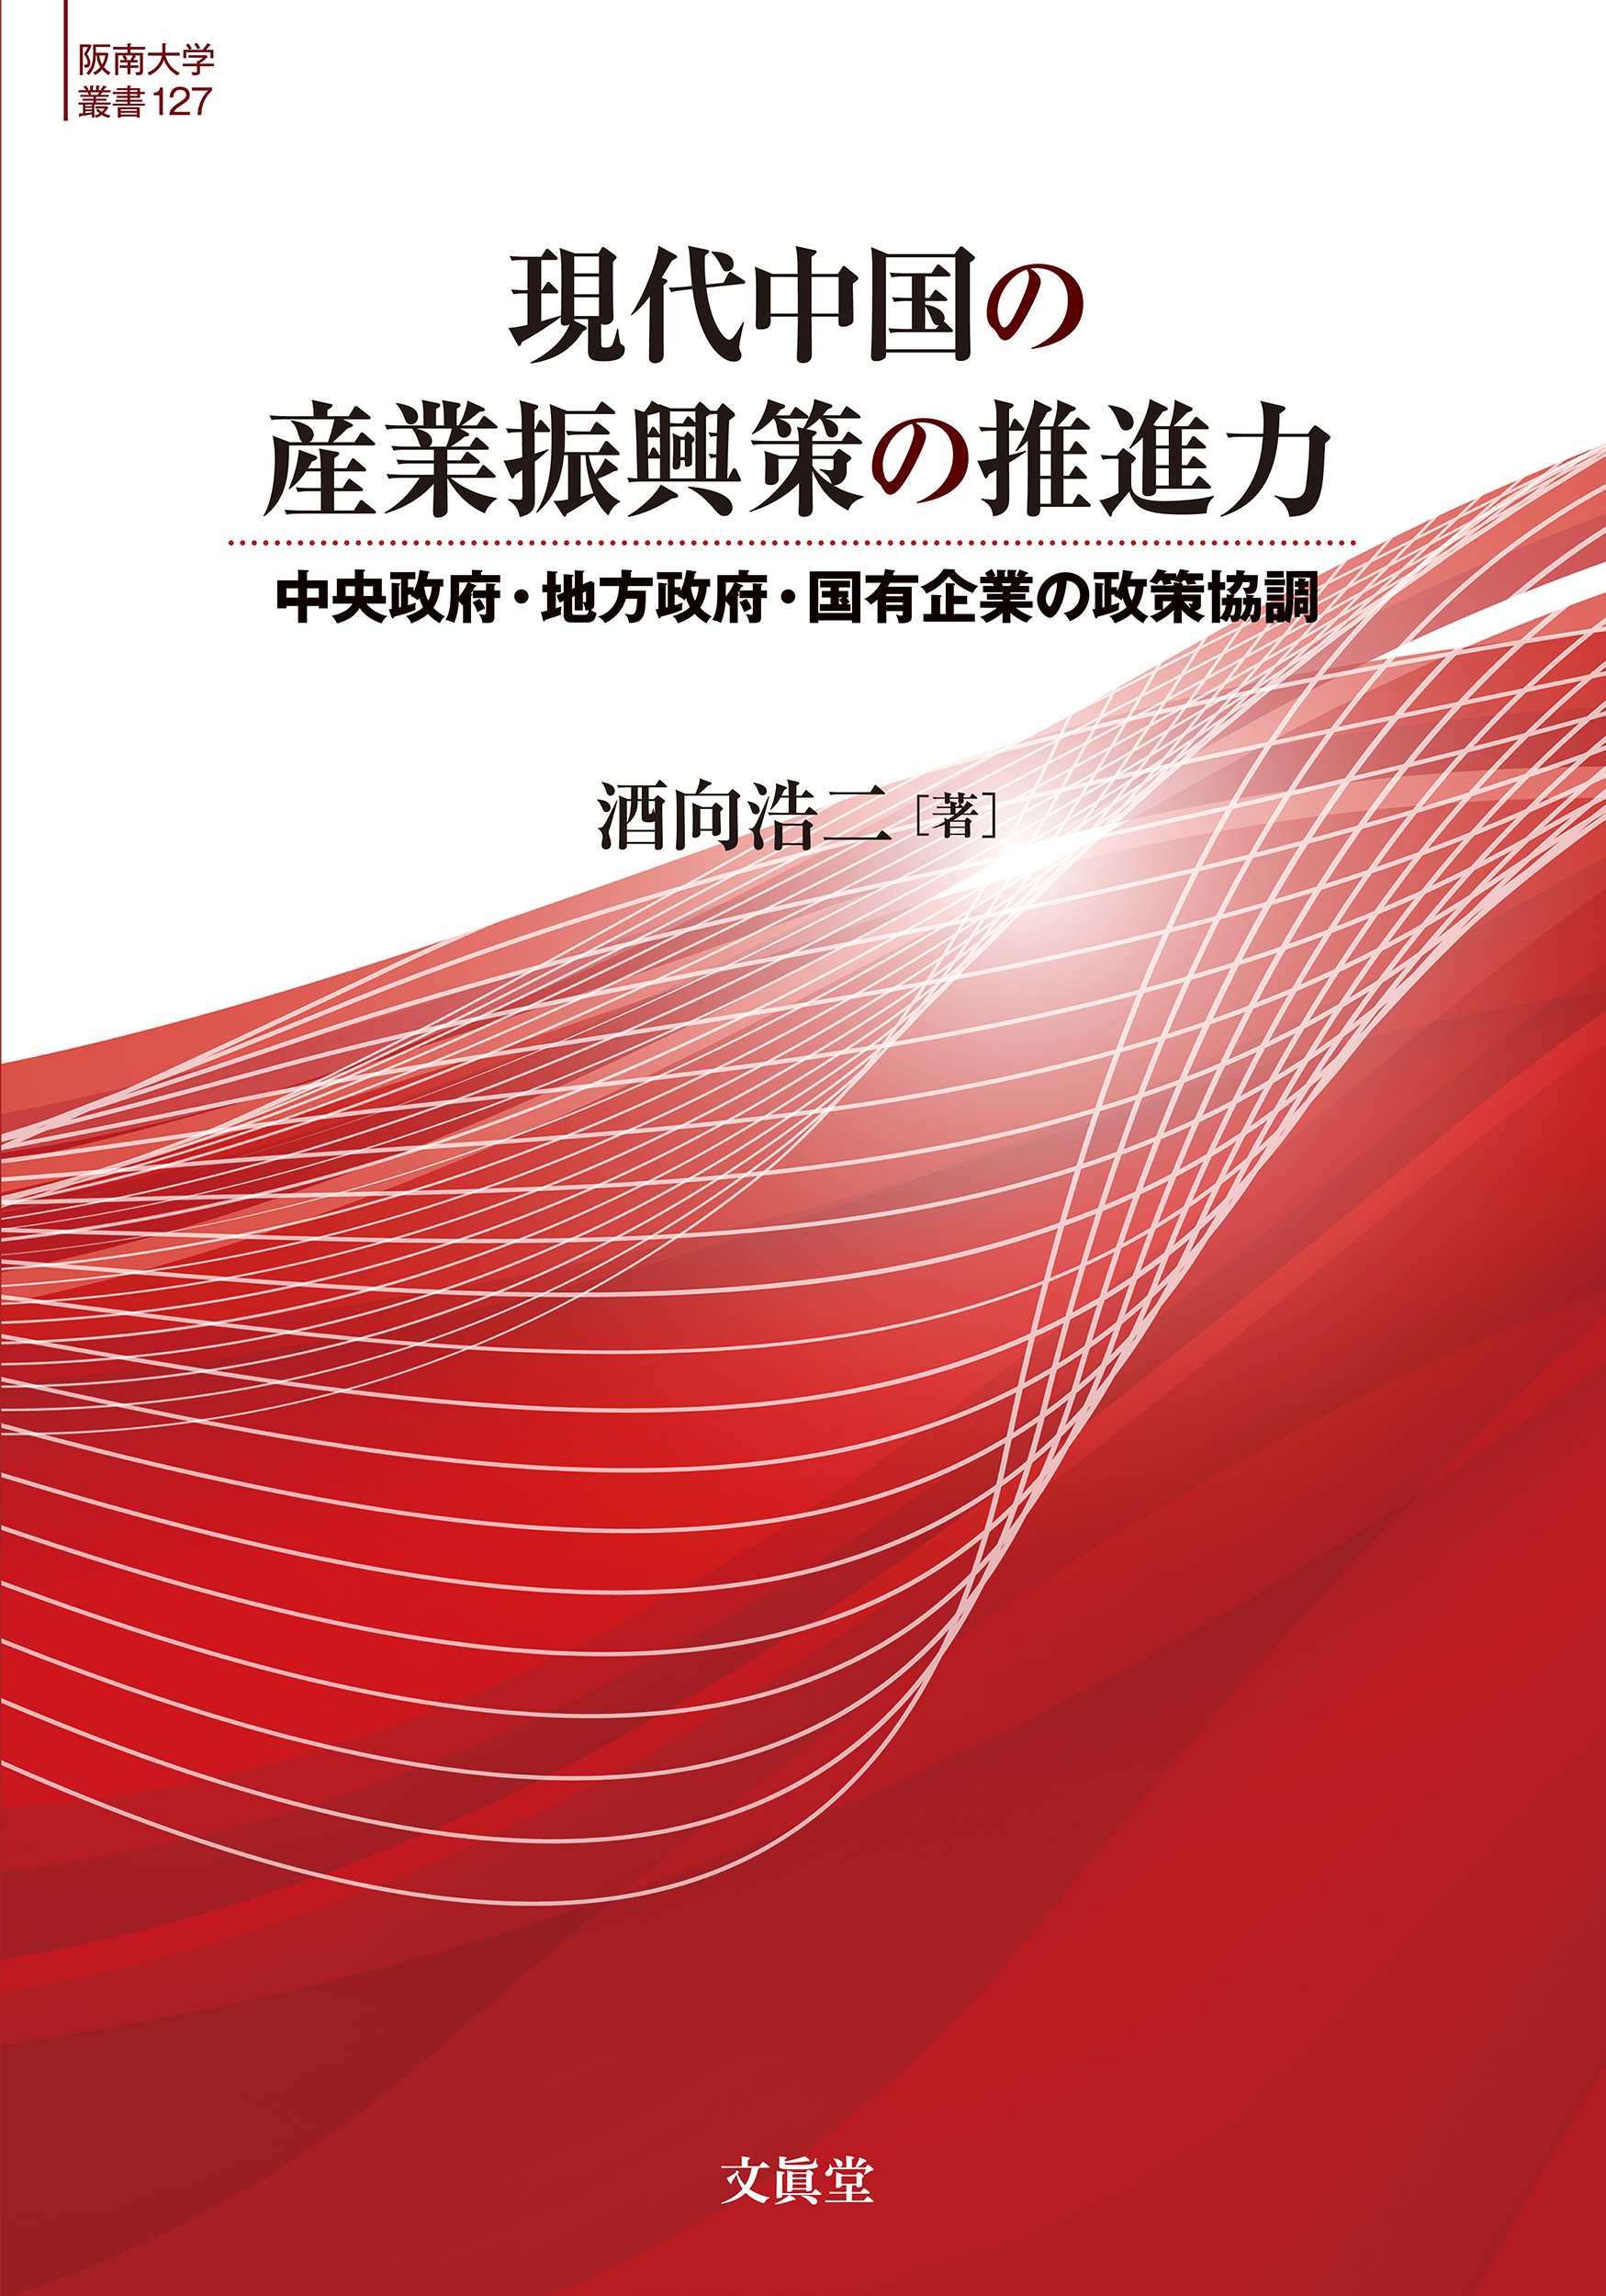 現代中国の産業振興策の推進力の商品画像